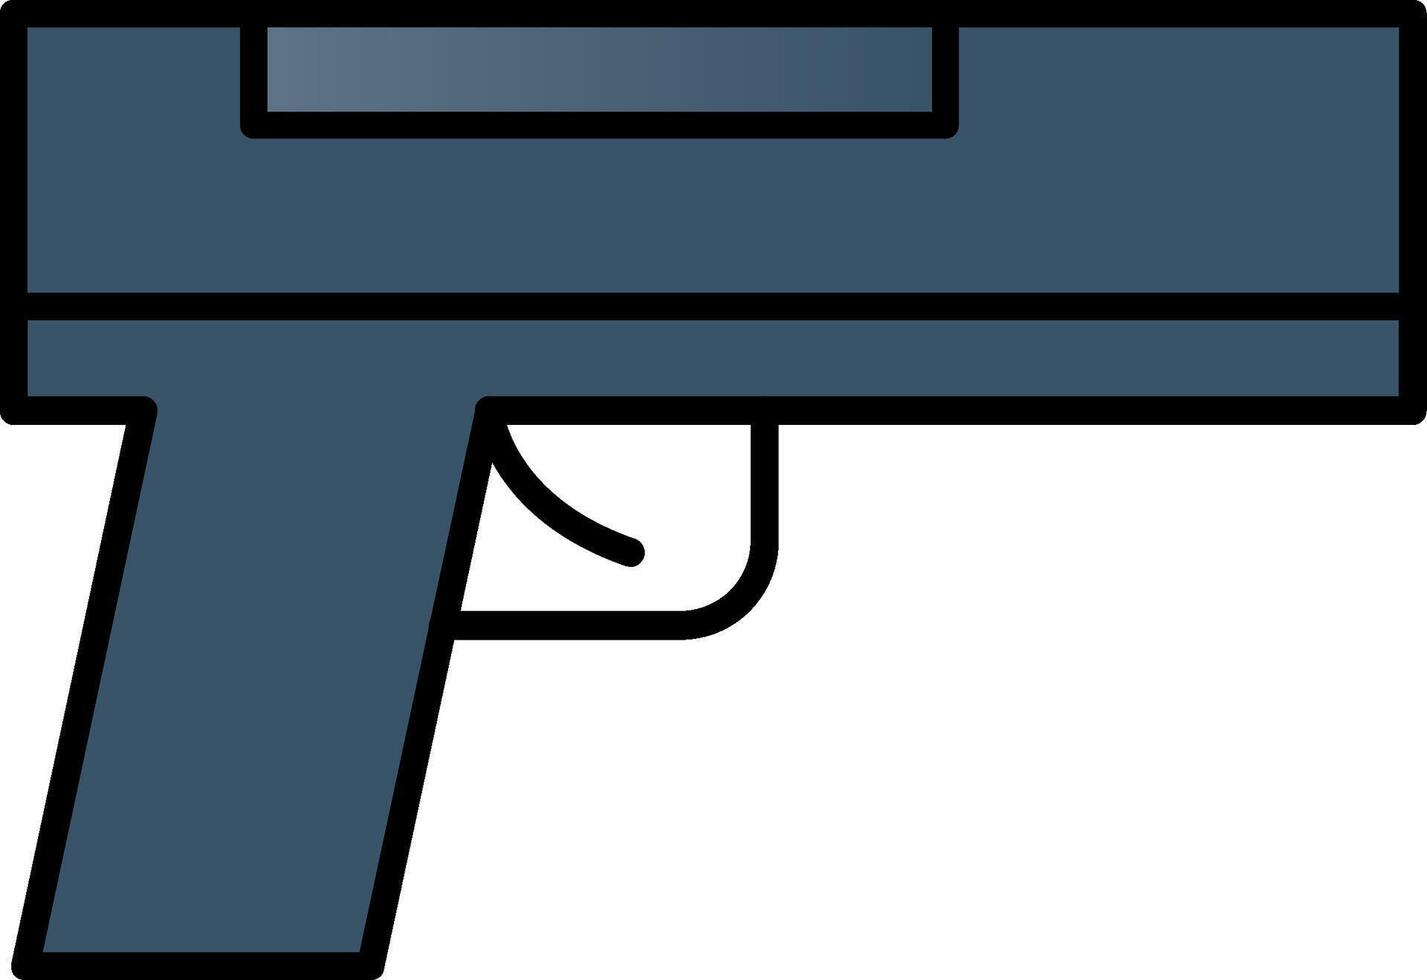 pistol linje fylld lutning ikon vektor